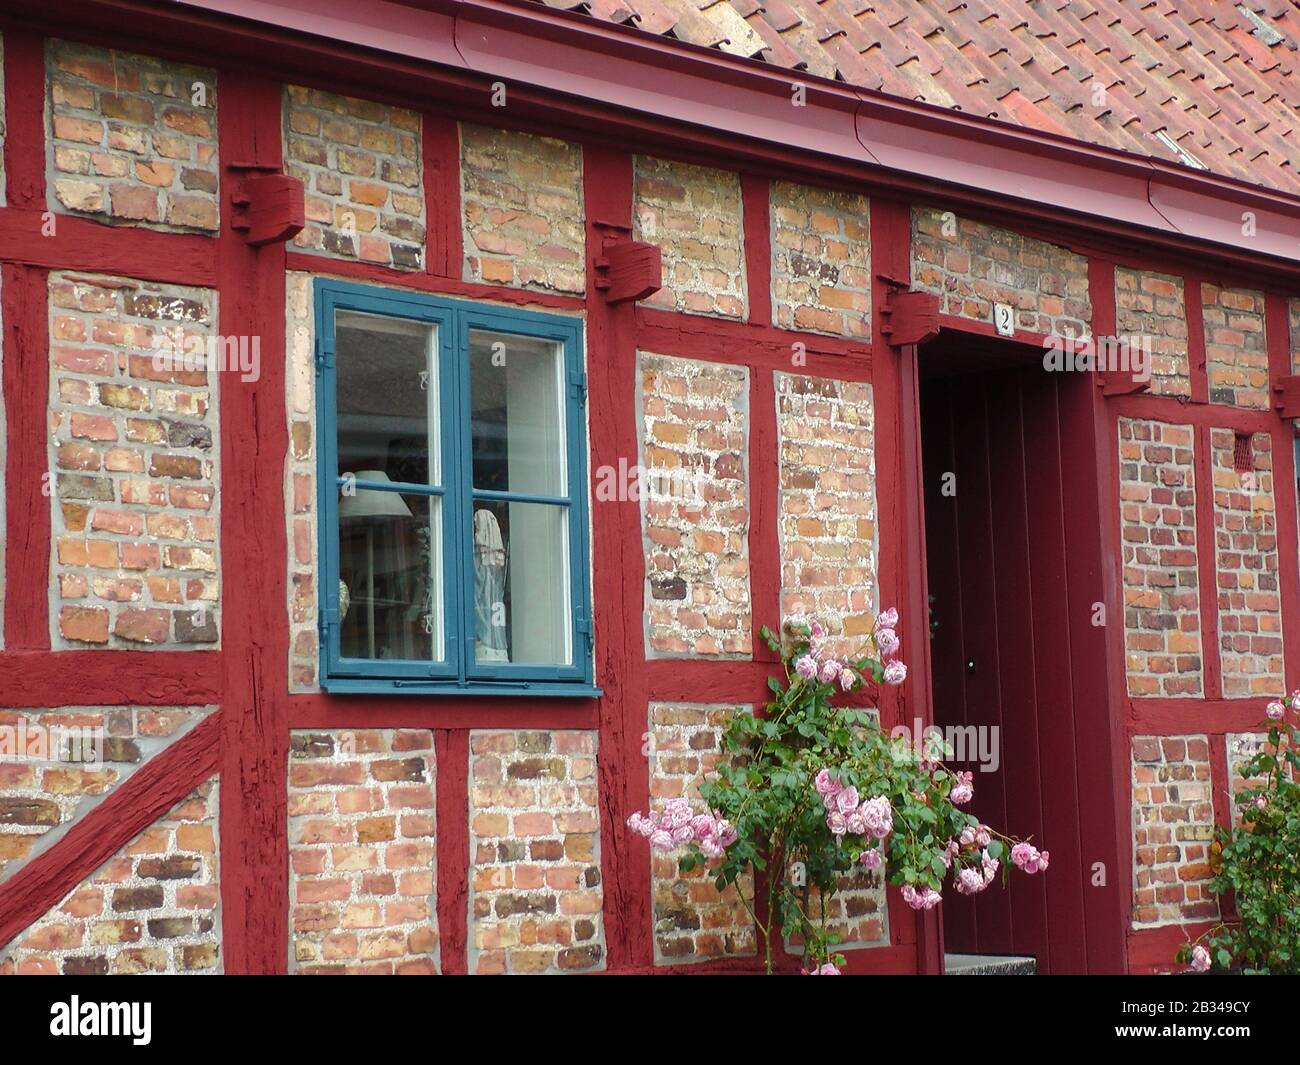 Ystrad: Grünes Fenster en Fachwerkhaus mit rot gestrichenen Balken in der Lilla Norregatan Foto de stock